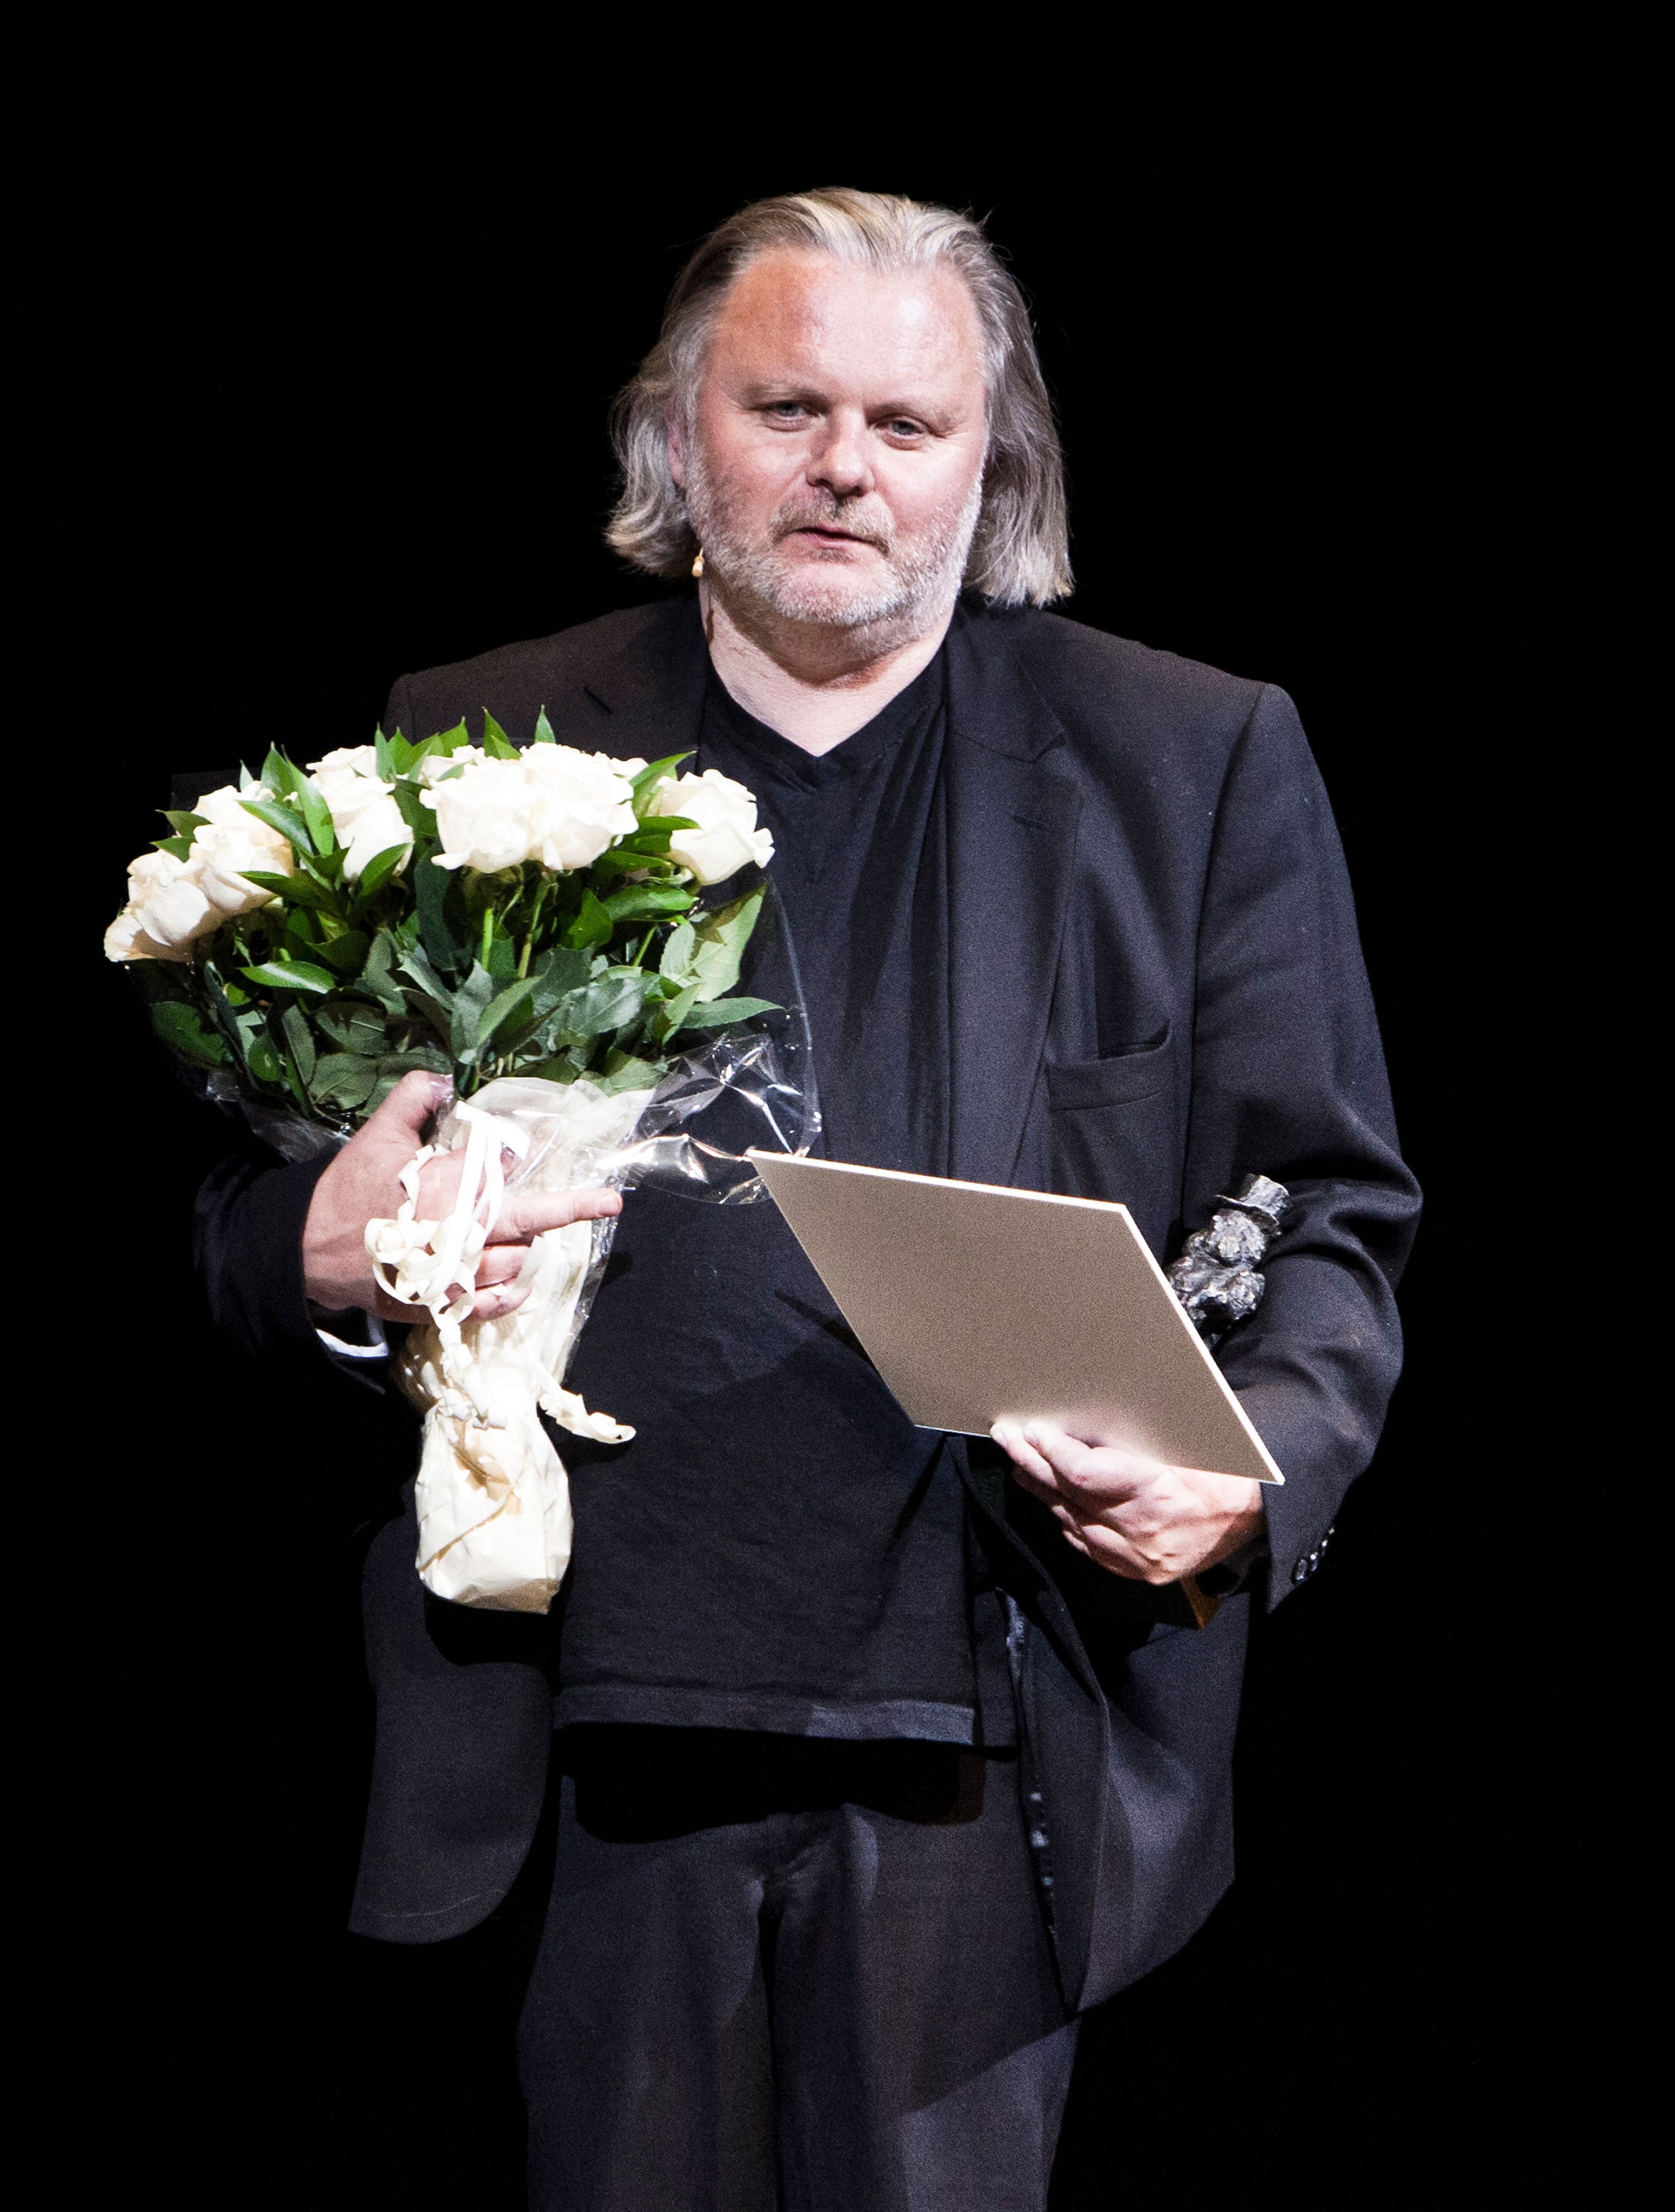 Jon Fosse recibió en el 2010 el prestigioso Ibsen Prize, uno de los premios más importantes del teatro mundial.

